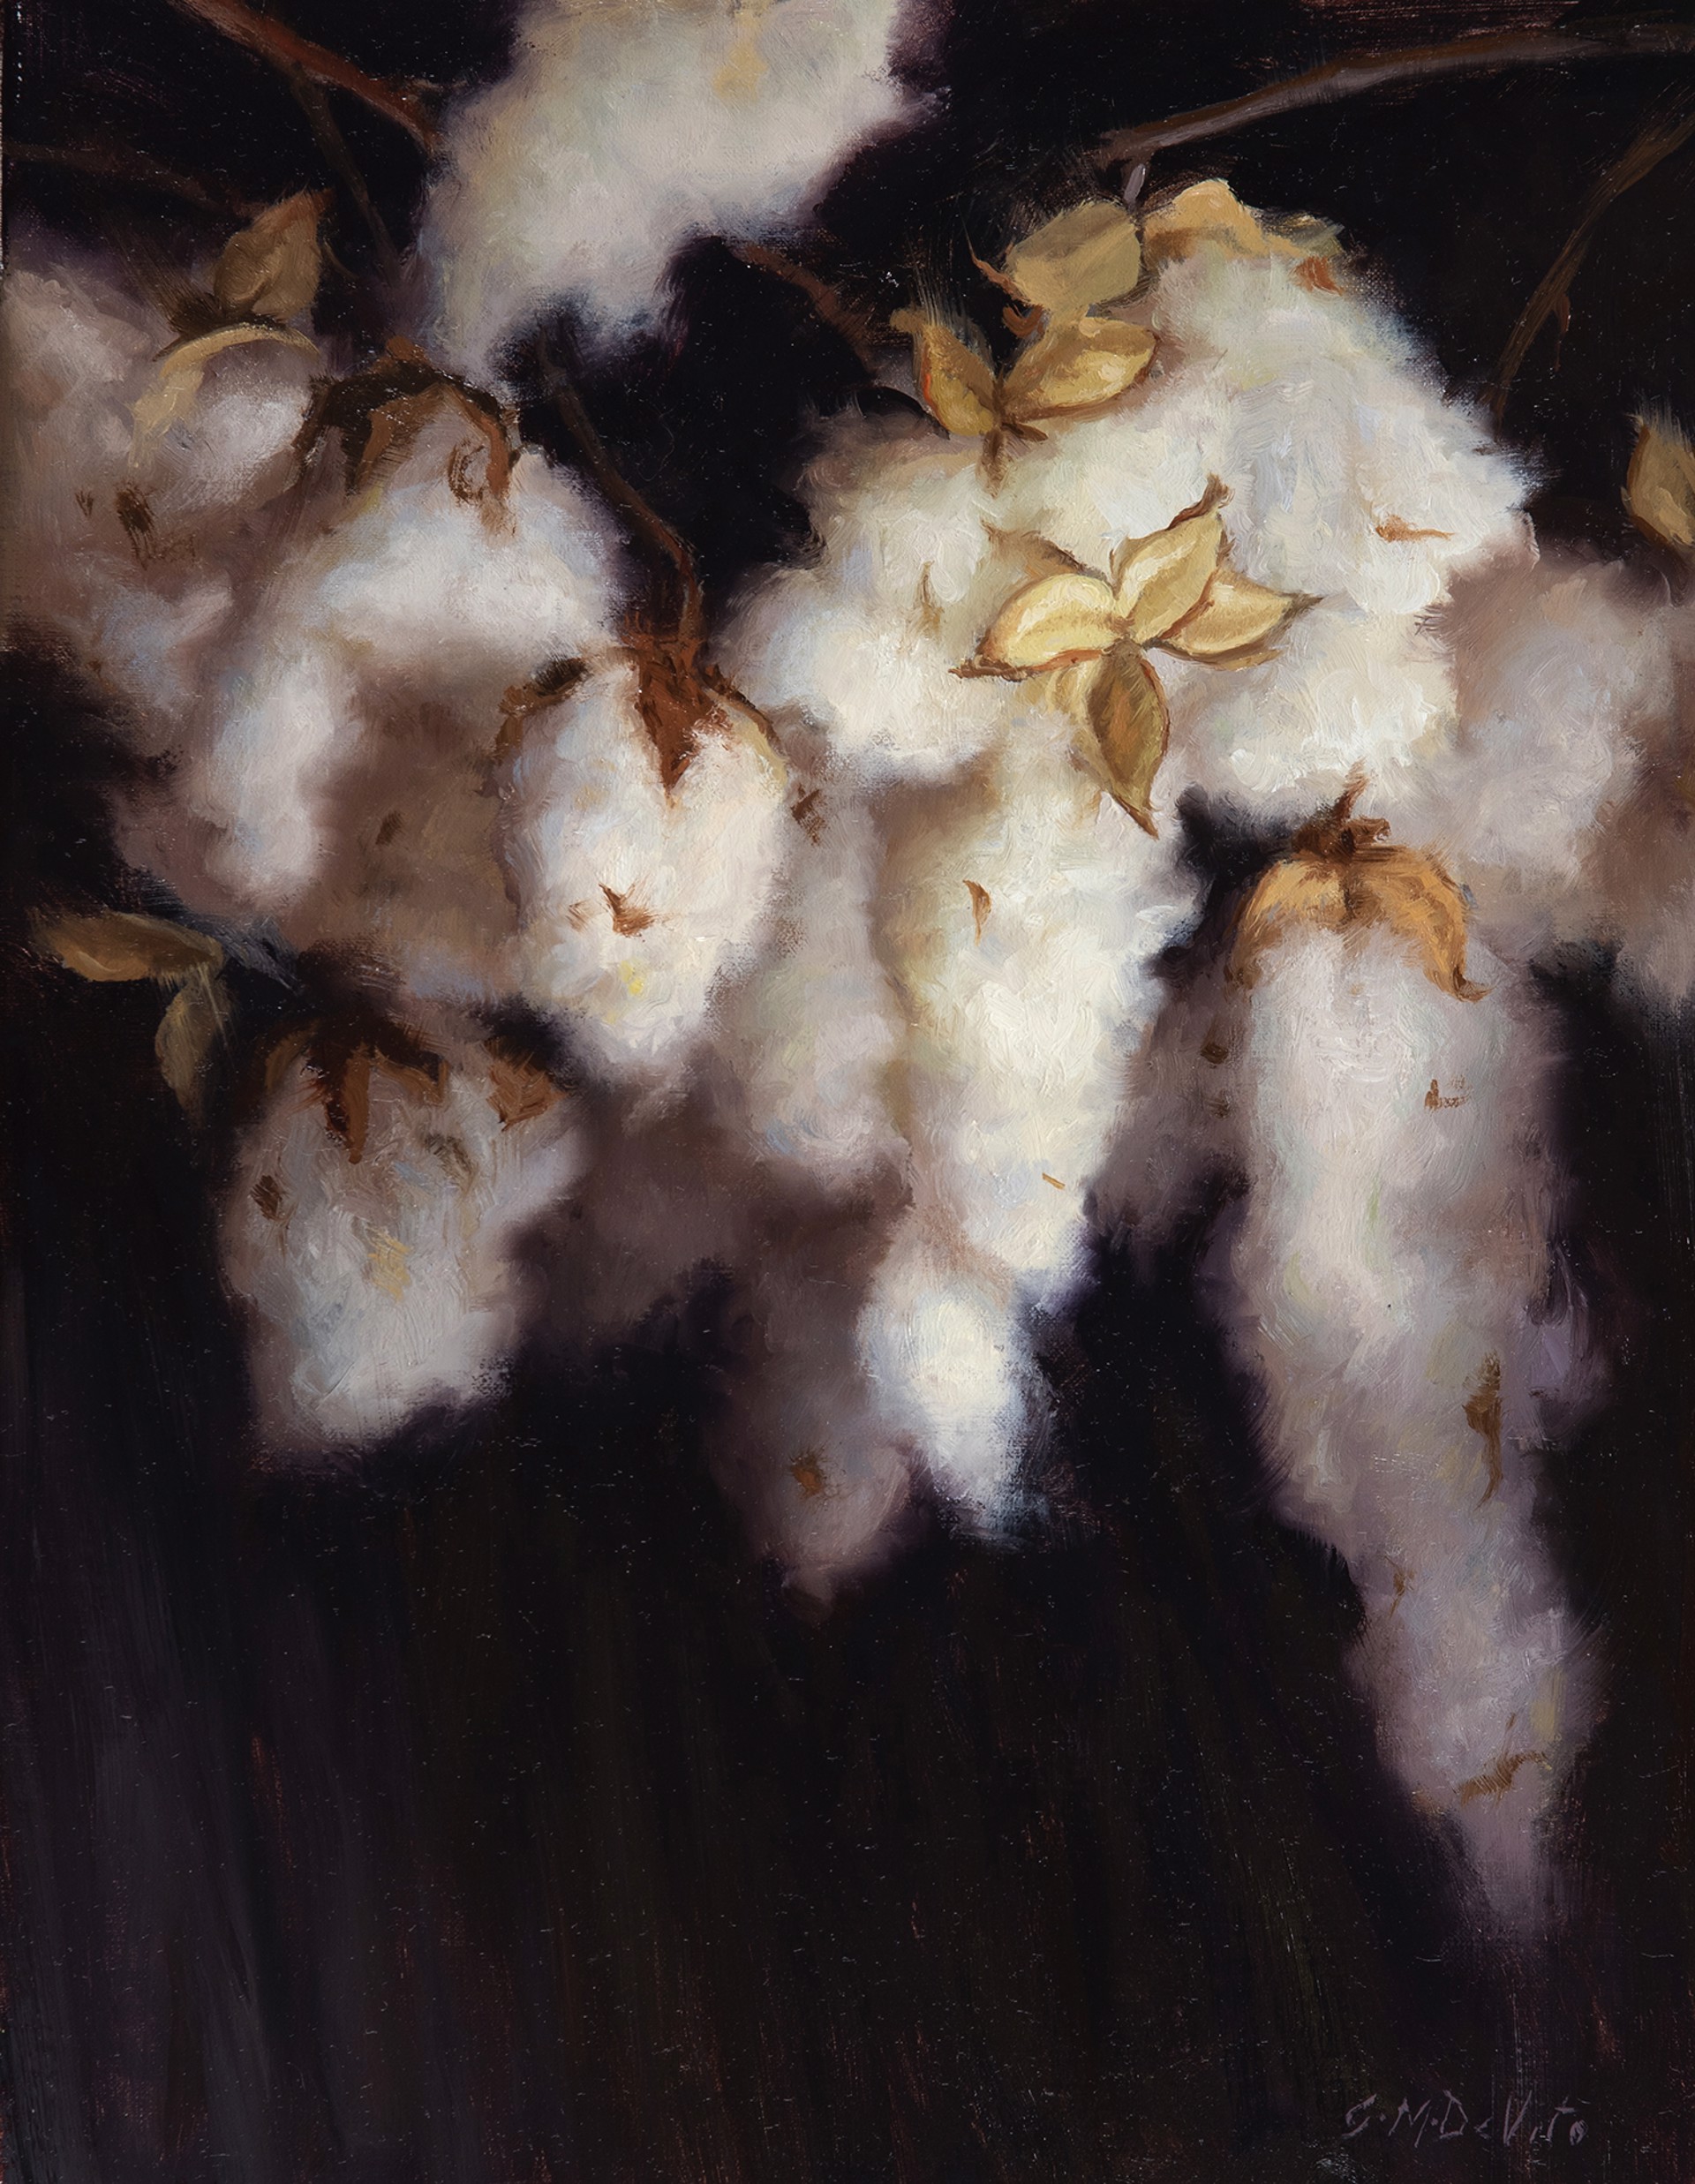 Pendant (Hanging Cotton) by Grace DeVito